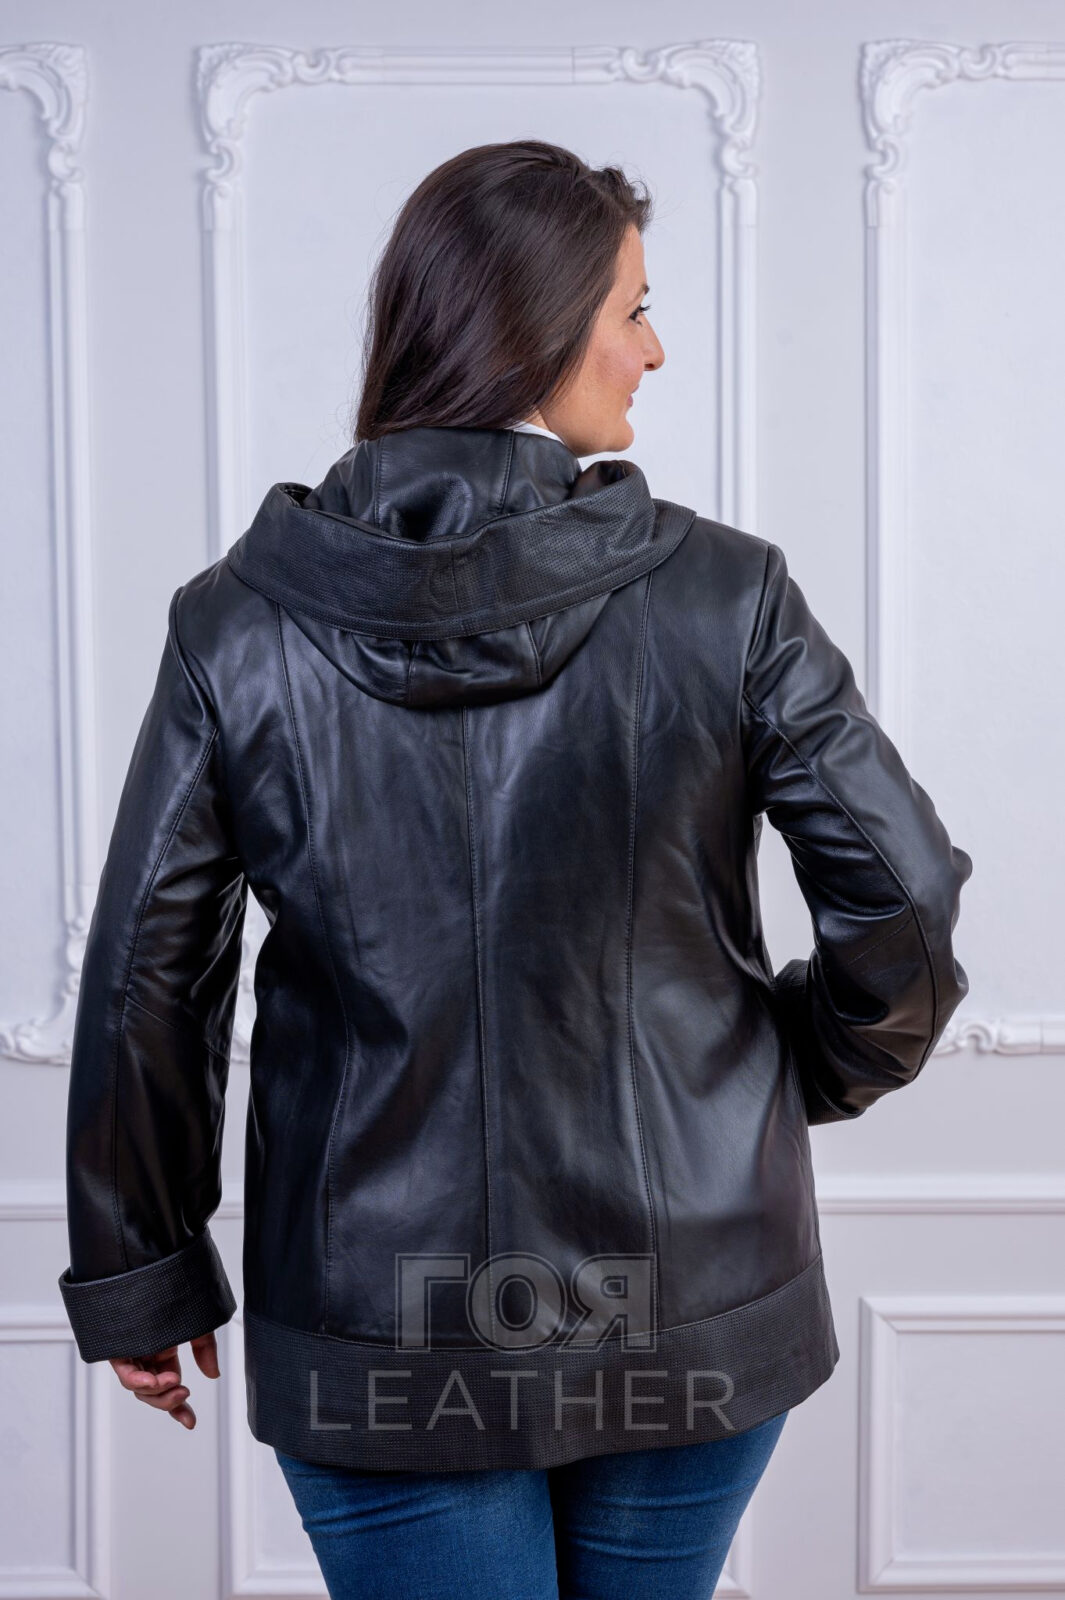 Дамско черно яке с качулка от ГОЯ Leather. Нов модел дамско яке изработен от 100% естествена кожа. Двуцветна комбинация ,червено и черно.